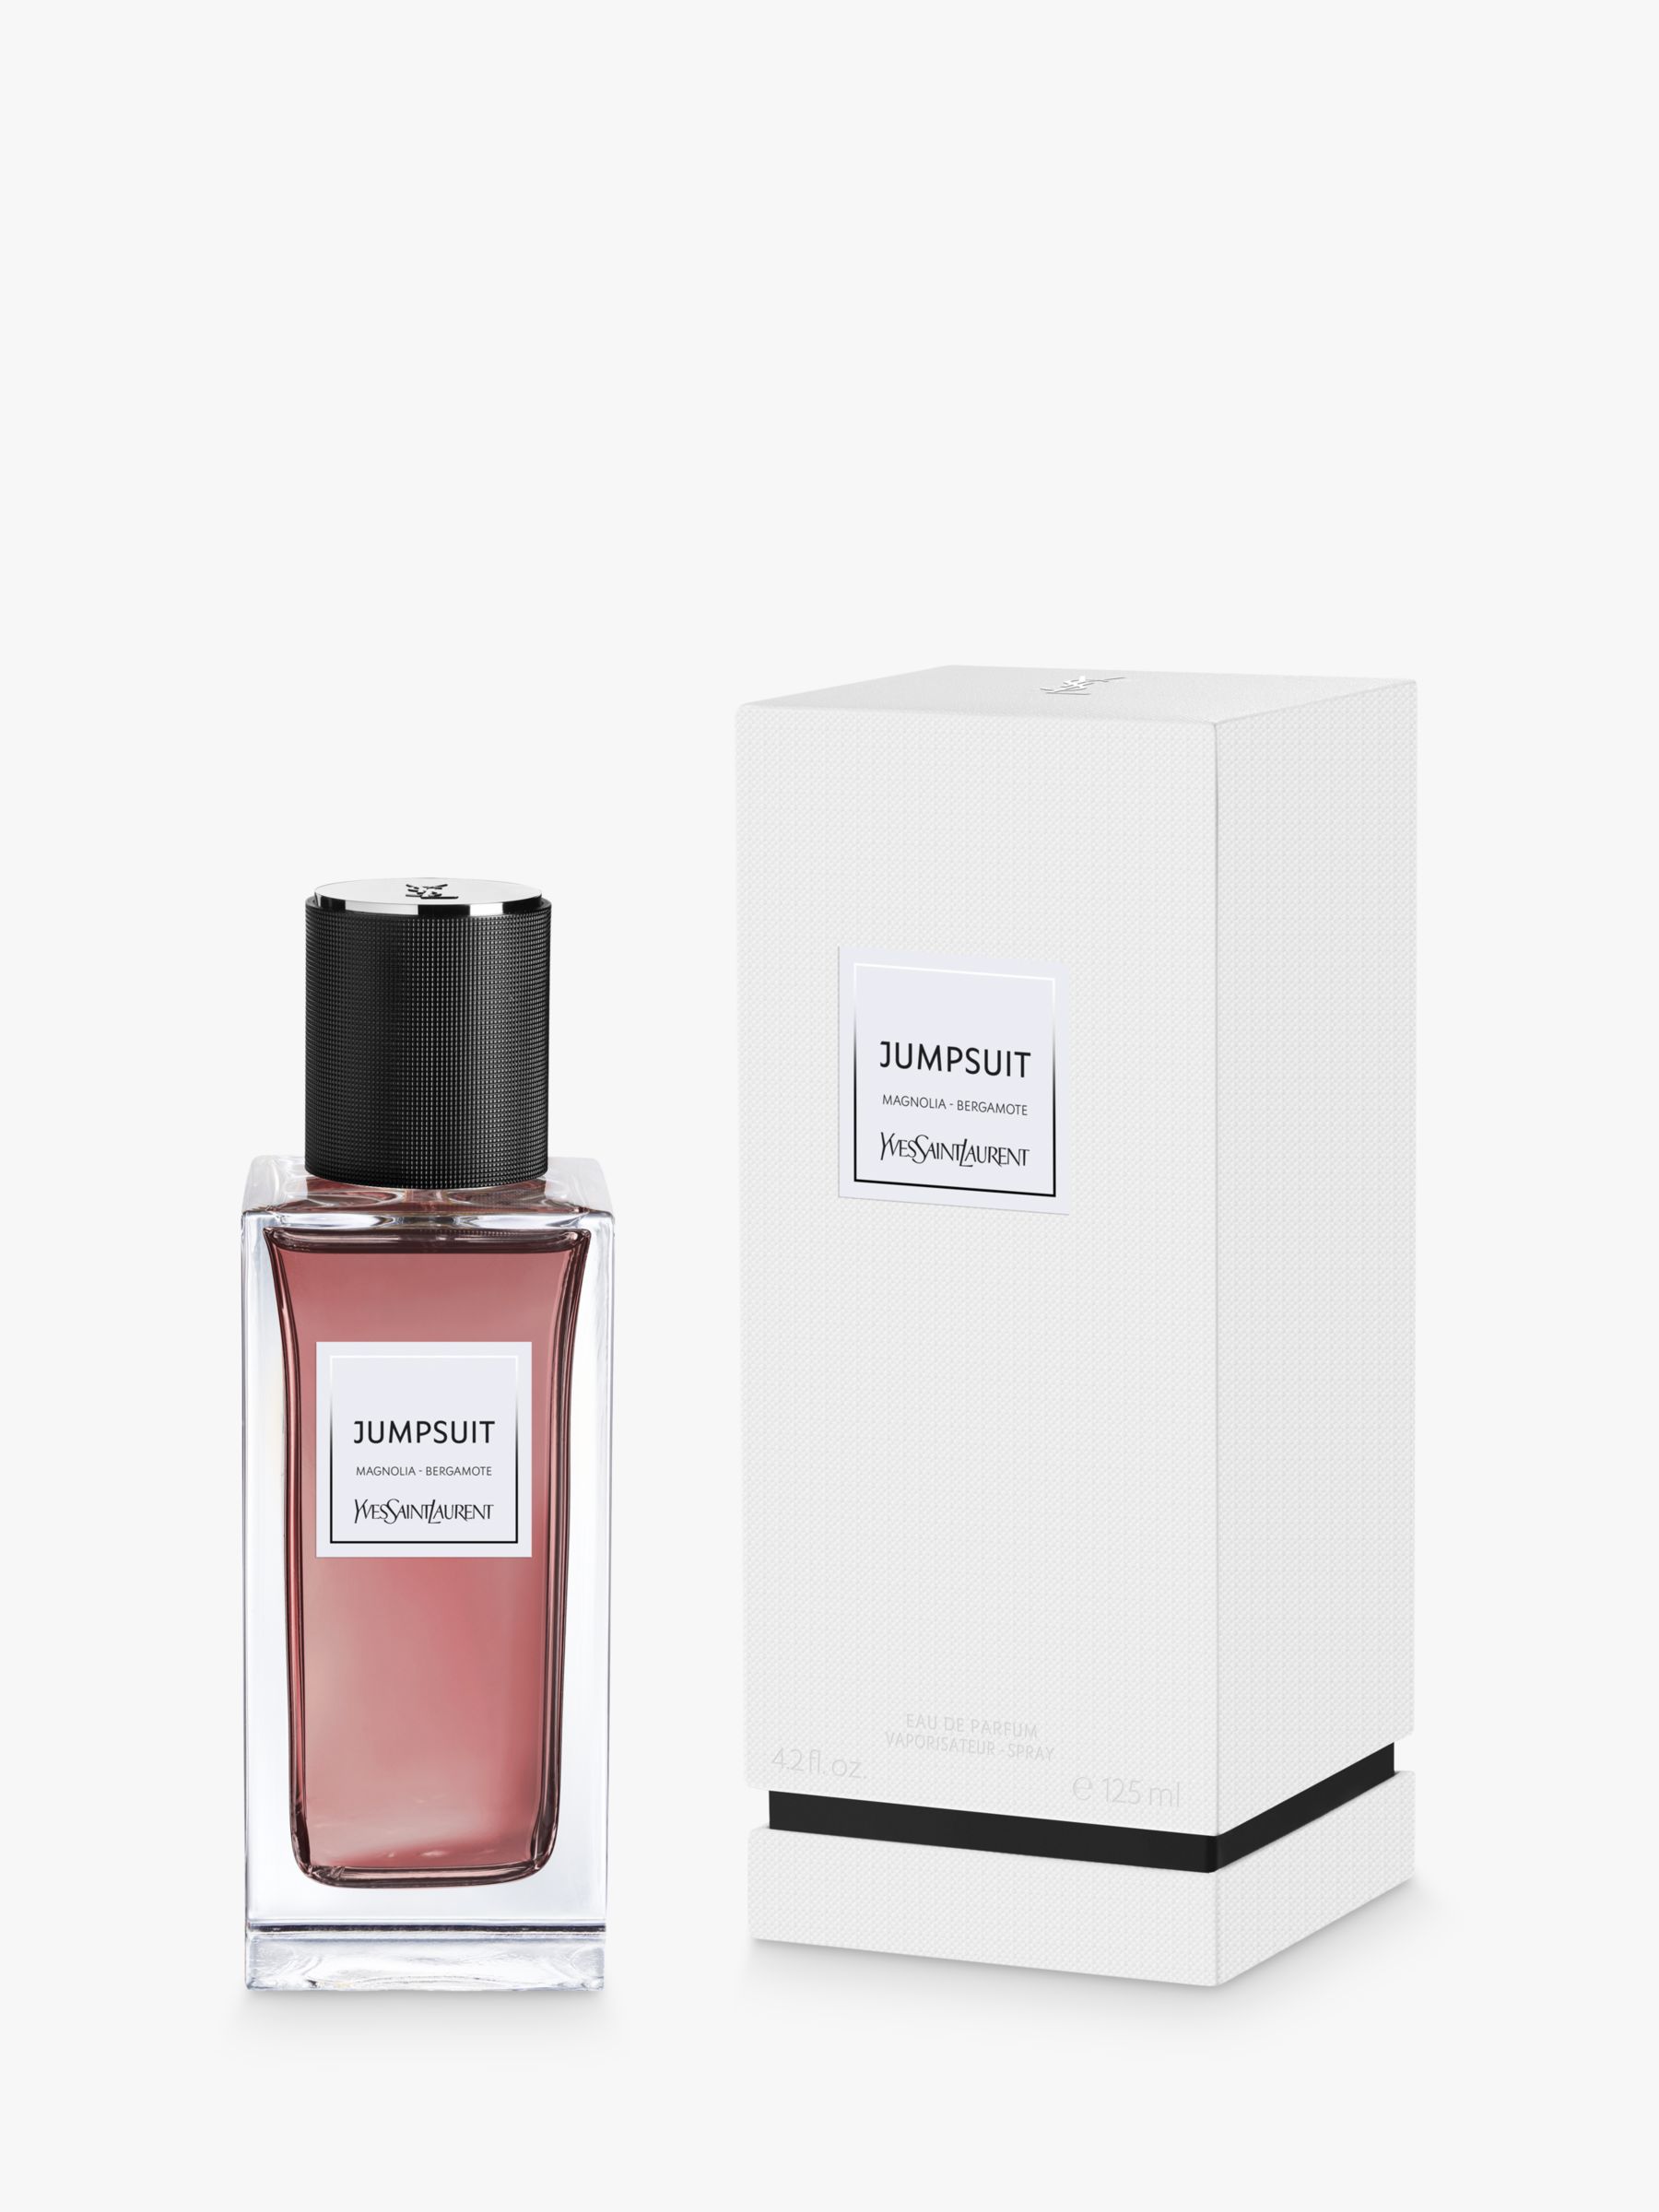 Yves Saint Laurent Jumpsuit Eau De Parfum, 125ml at John Lewis & Partners